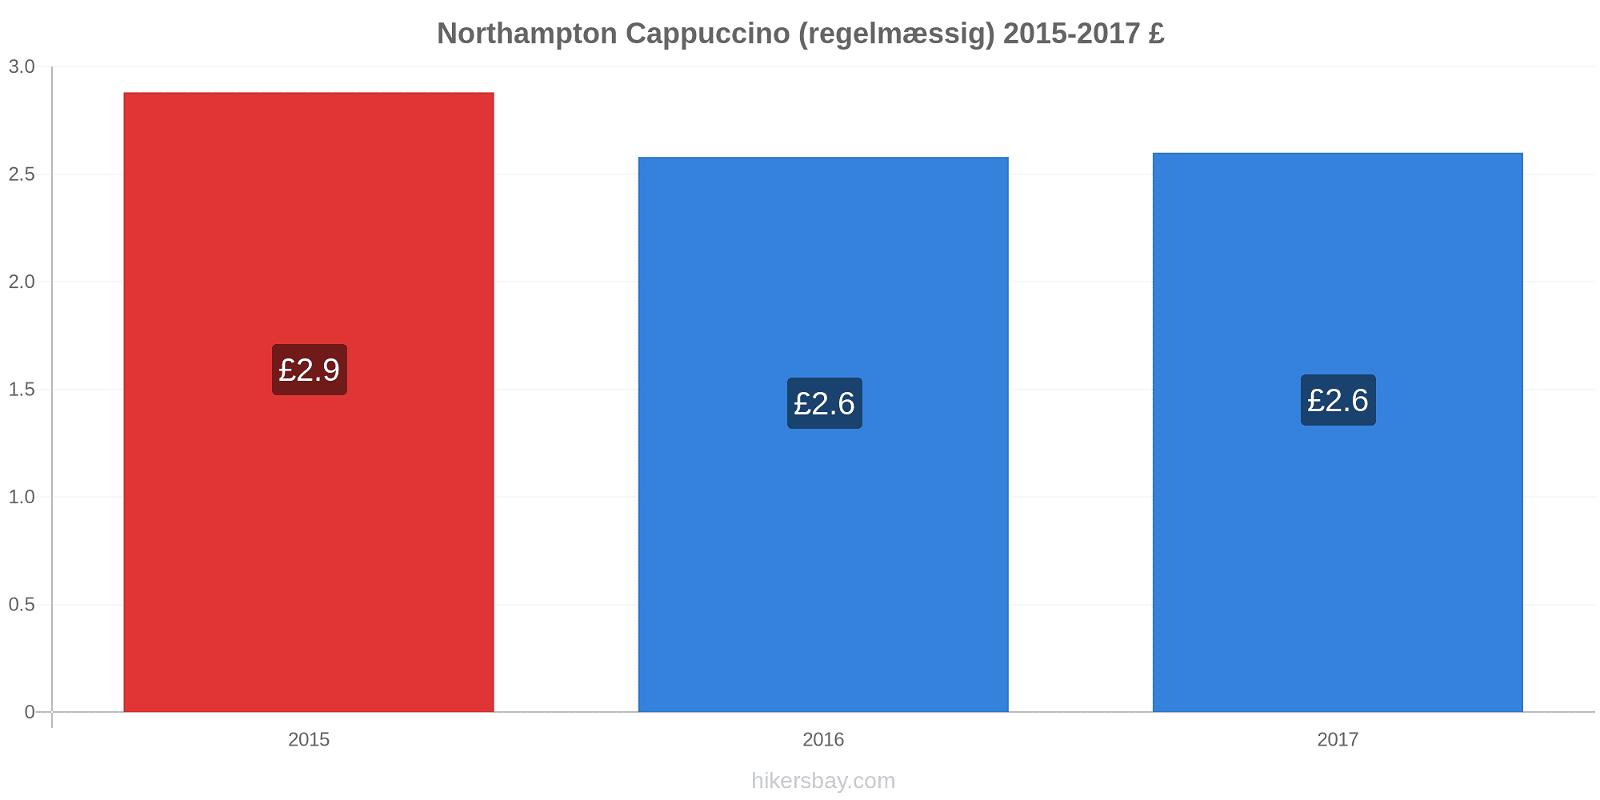 Northampton prisændringer Cappuccino (regelmæssig) hikersbay.com